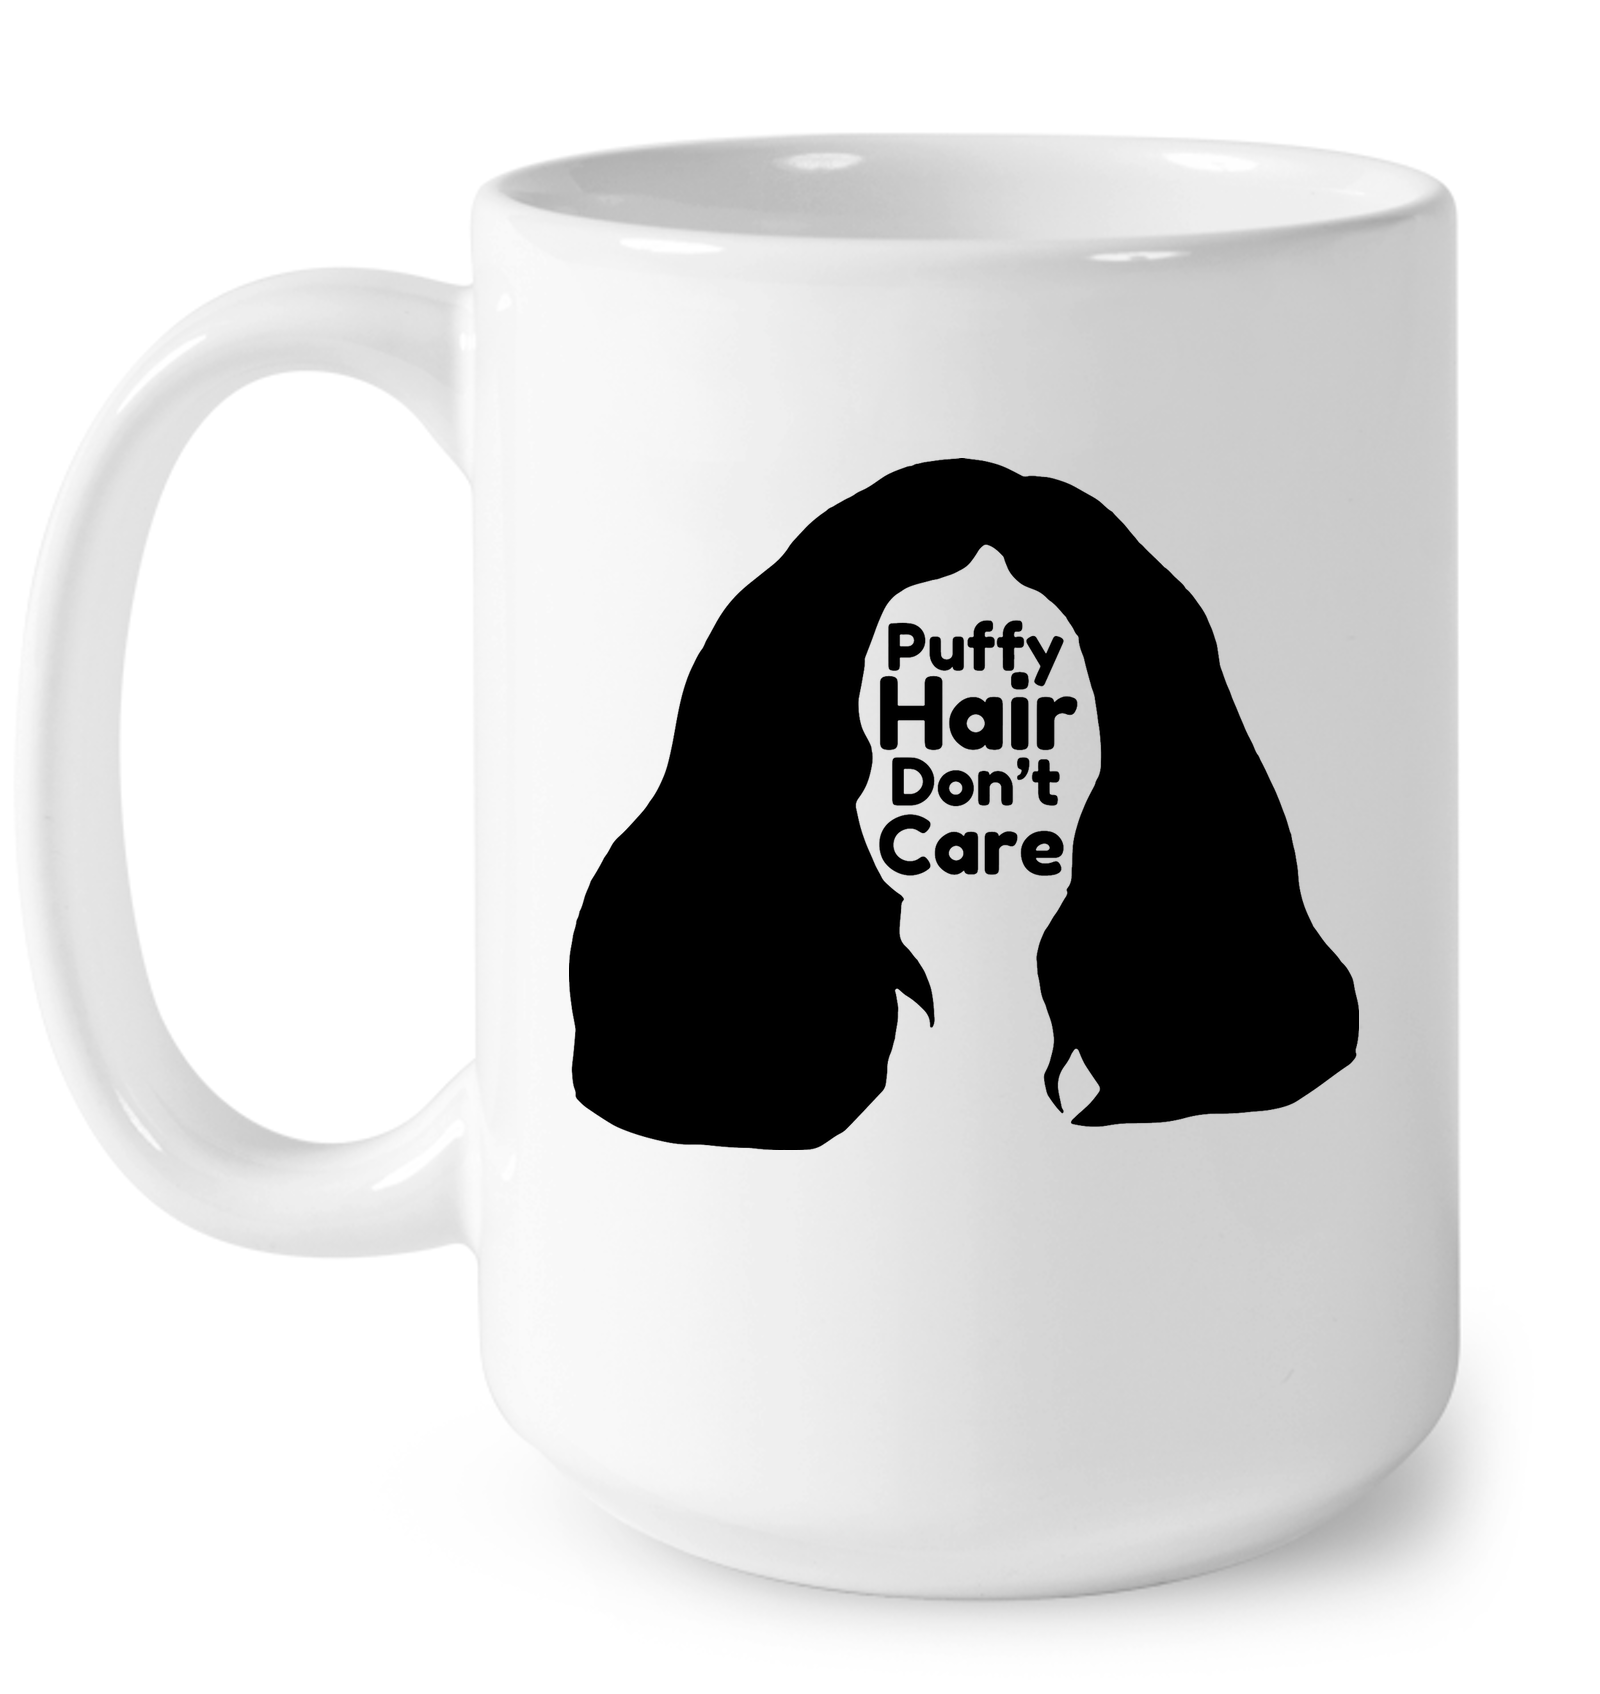 Puffy Hair Don't Care, Sophie - Ceramic Mug